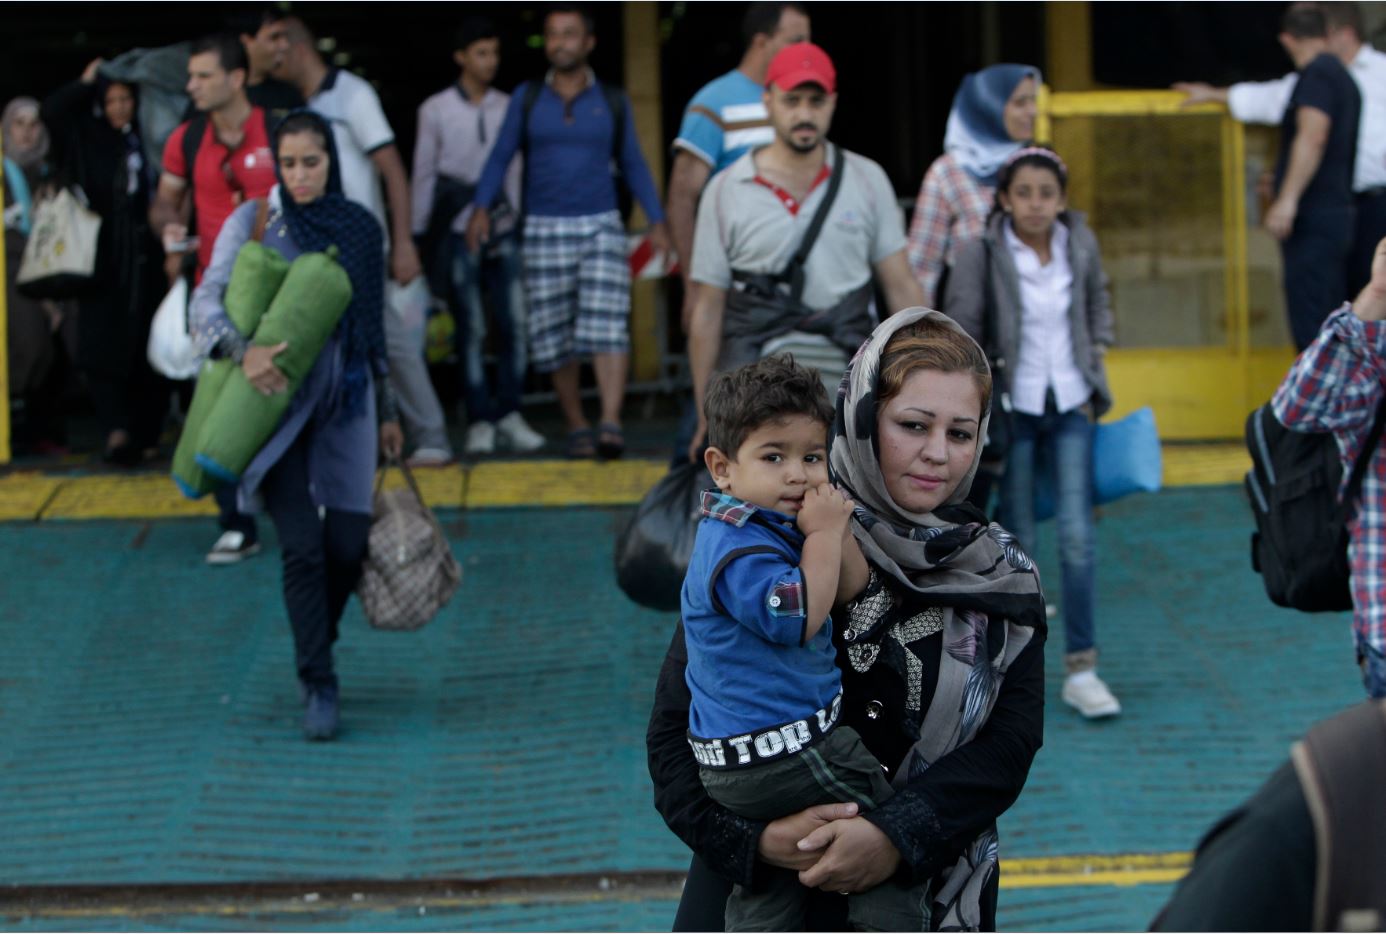 Υπουργείο Ναυτιλίας: Διευκρινήσεις για την ενημέρωση προσφύγων και μεταναστών στο λιμάνι του Πειραιά